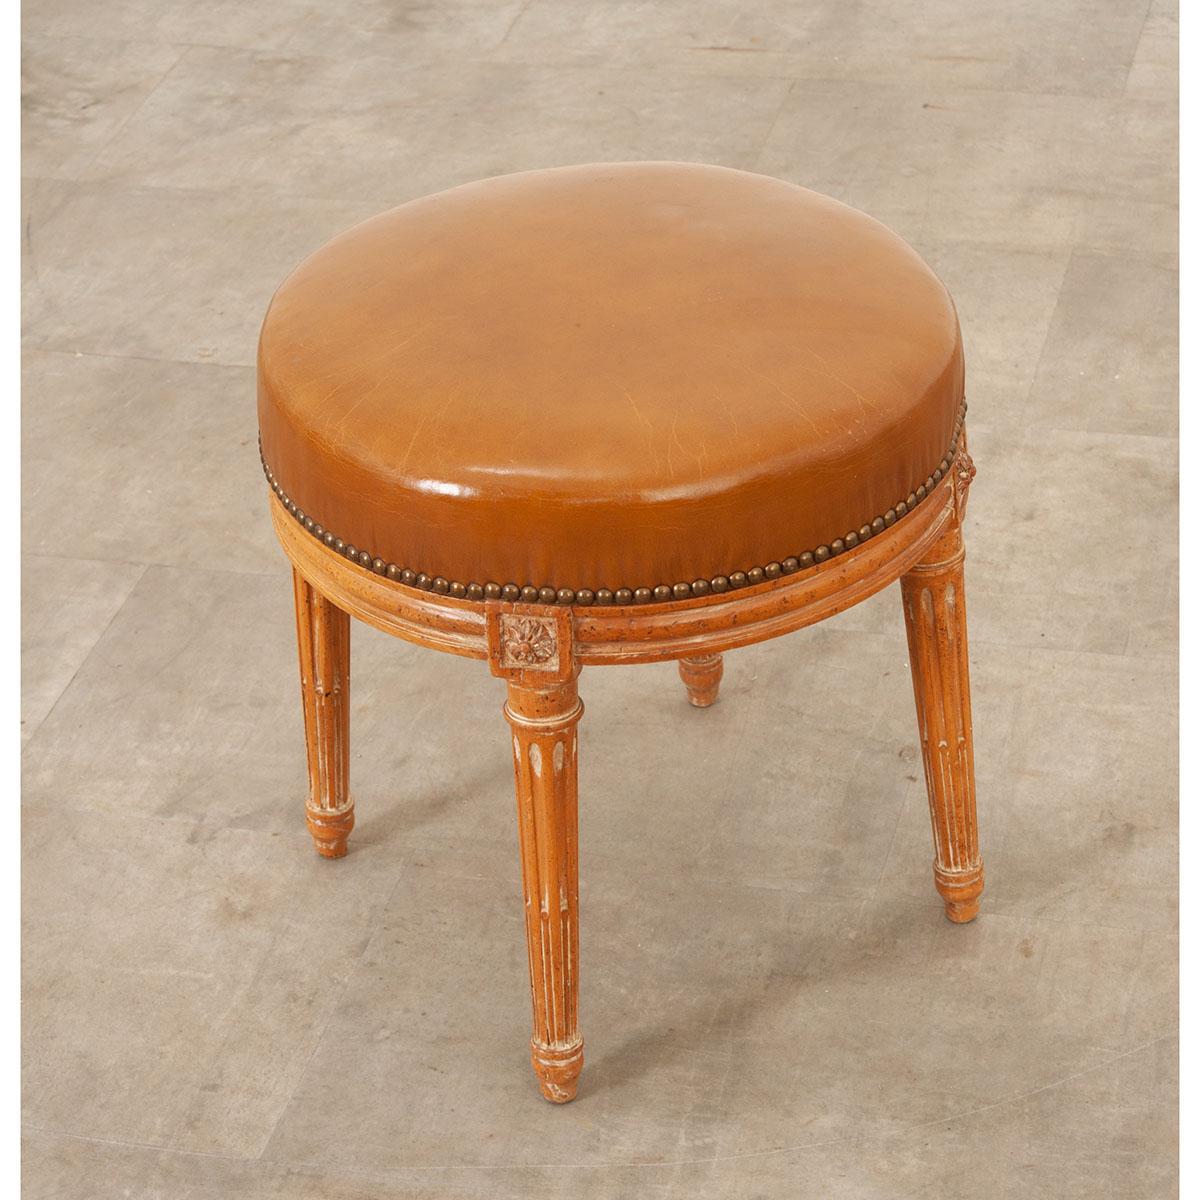 Ein schöner Hocker im Vintage-Stil, perfekt für jeden Raum. Dieser in Frankreich gefertigte Hocker aus dem 19. Jahrhundert hat einen mit buntem Leder gepolsterten Sitz auf vier elegant kannelierten und konisch zulaufenden Beinen mit